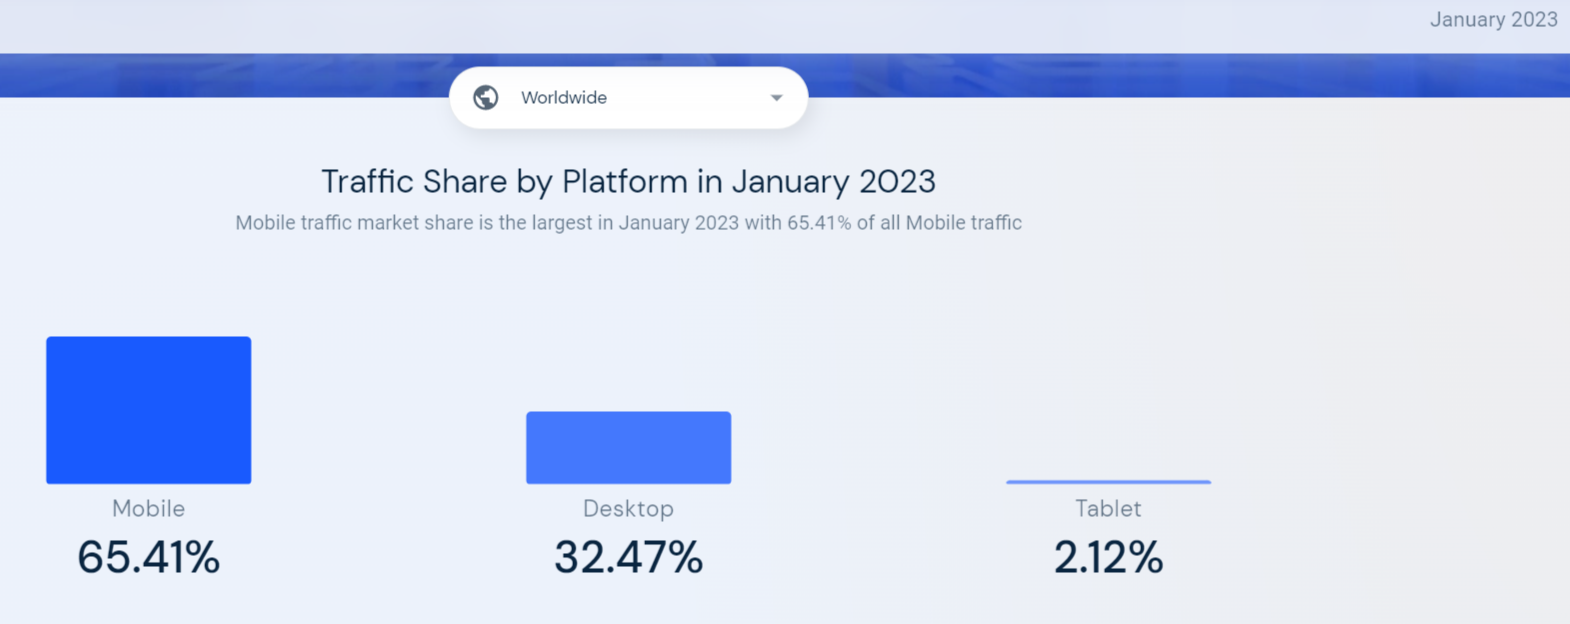 Im letzten Jahr haben die mobilen Nutzer mehr als 60% des gesamten Online-Verkehrs ausgemacht. Im Januar 2023 machten mobile Nutzer 65,41% dieses Verkehrs aus, verglichen mit 35,47% für Desktop-Nutzer und 2,12% für Tablet-Nutzer. (similarweb, 2023)